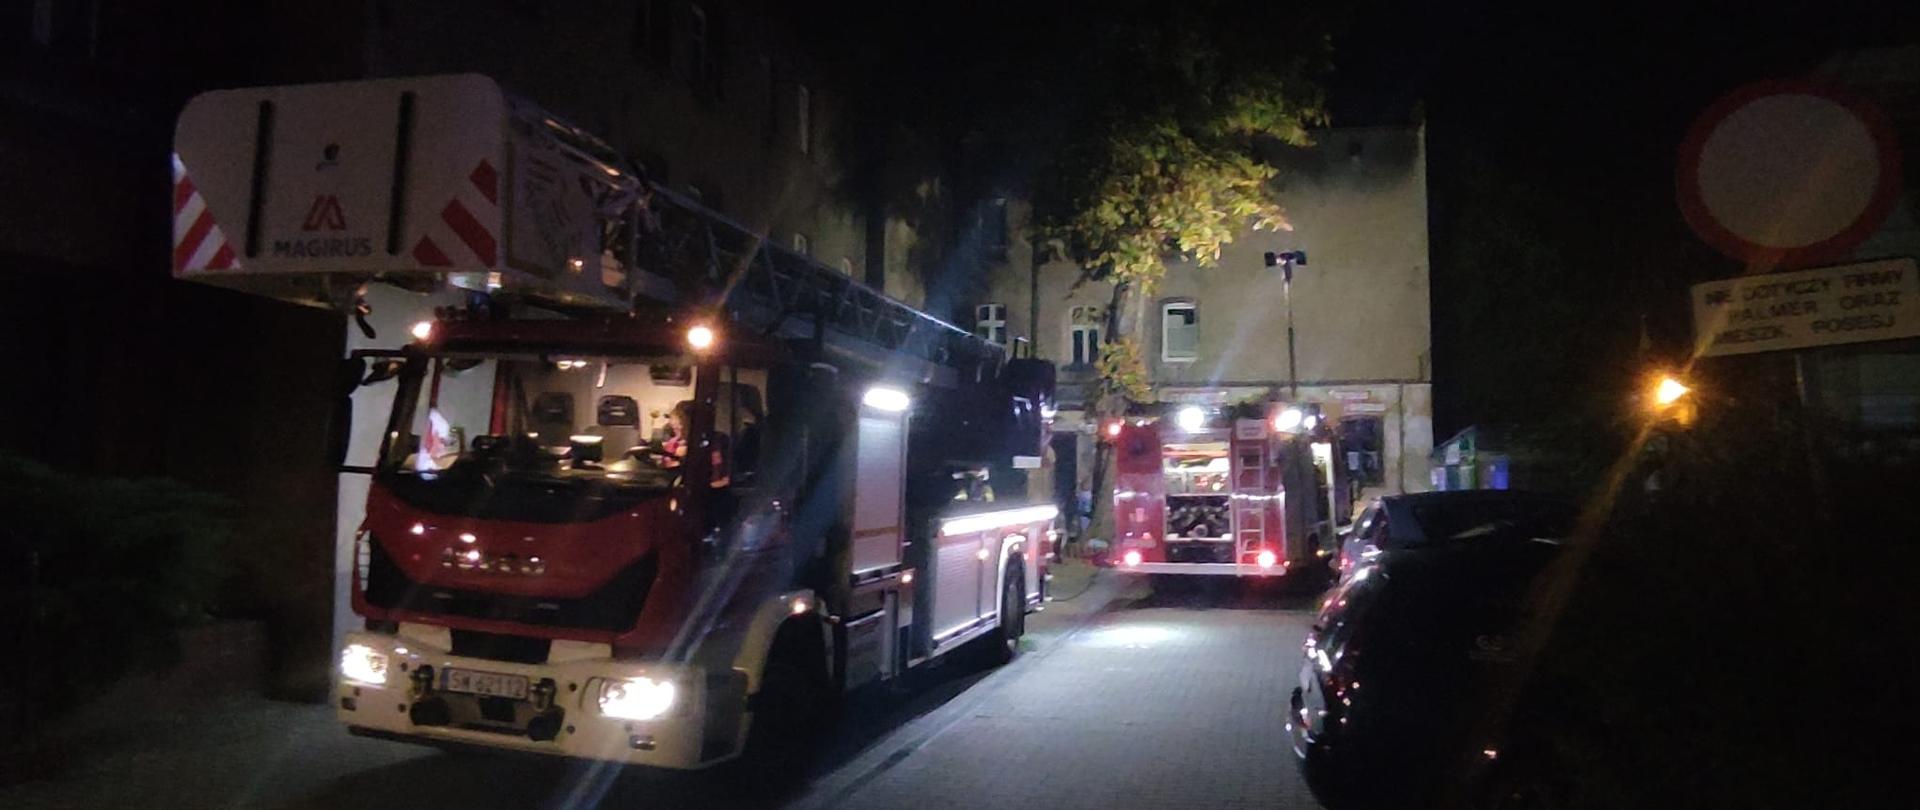 Na pierwszym planie drabina straży pożarnej stojąca na ulicy, w tle stoi samochód gaśniczy stojący przy budynku objętym pożarem.